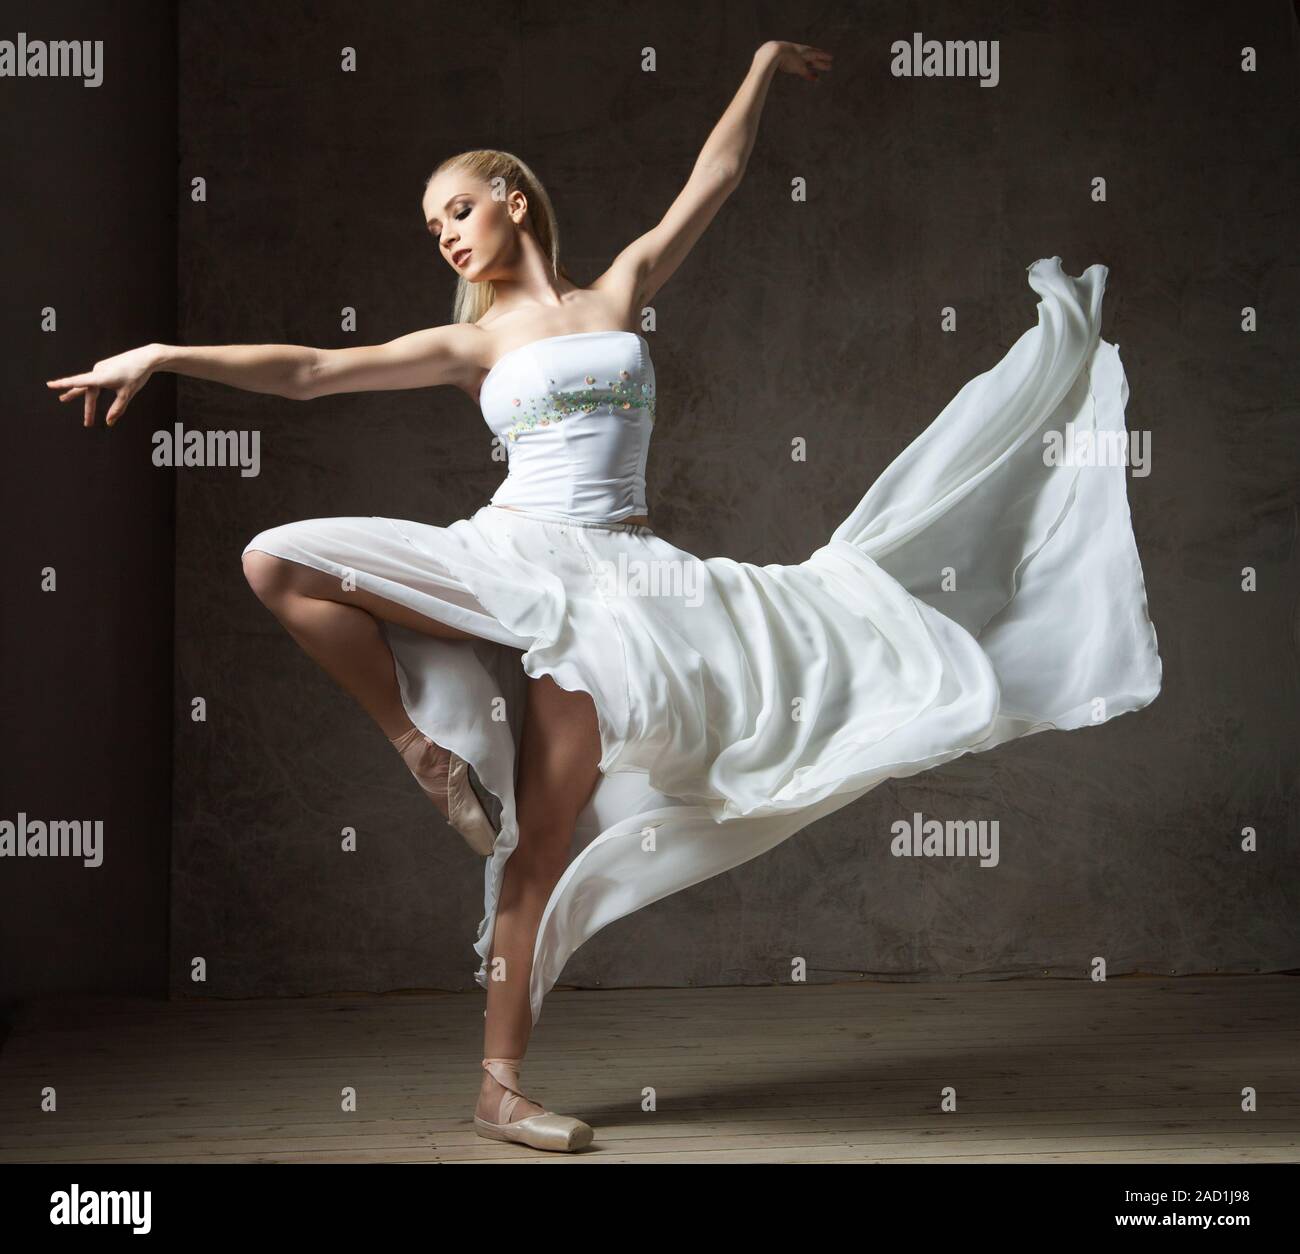 Stunning Ballet Dancer Picture